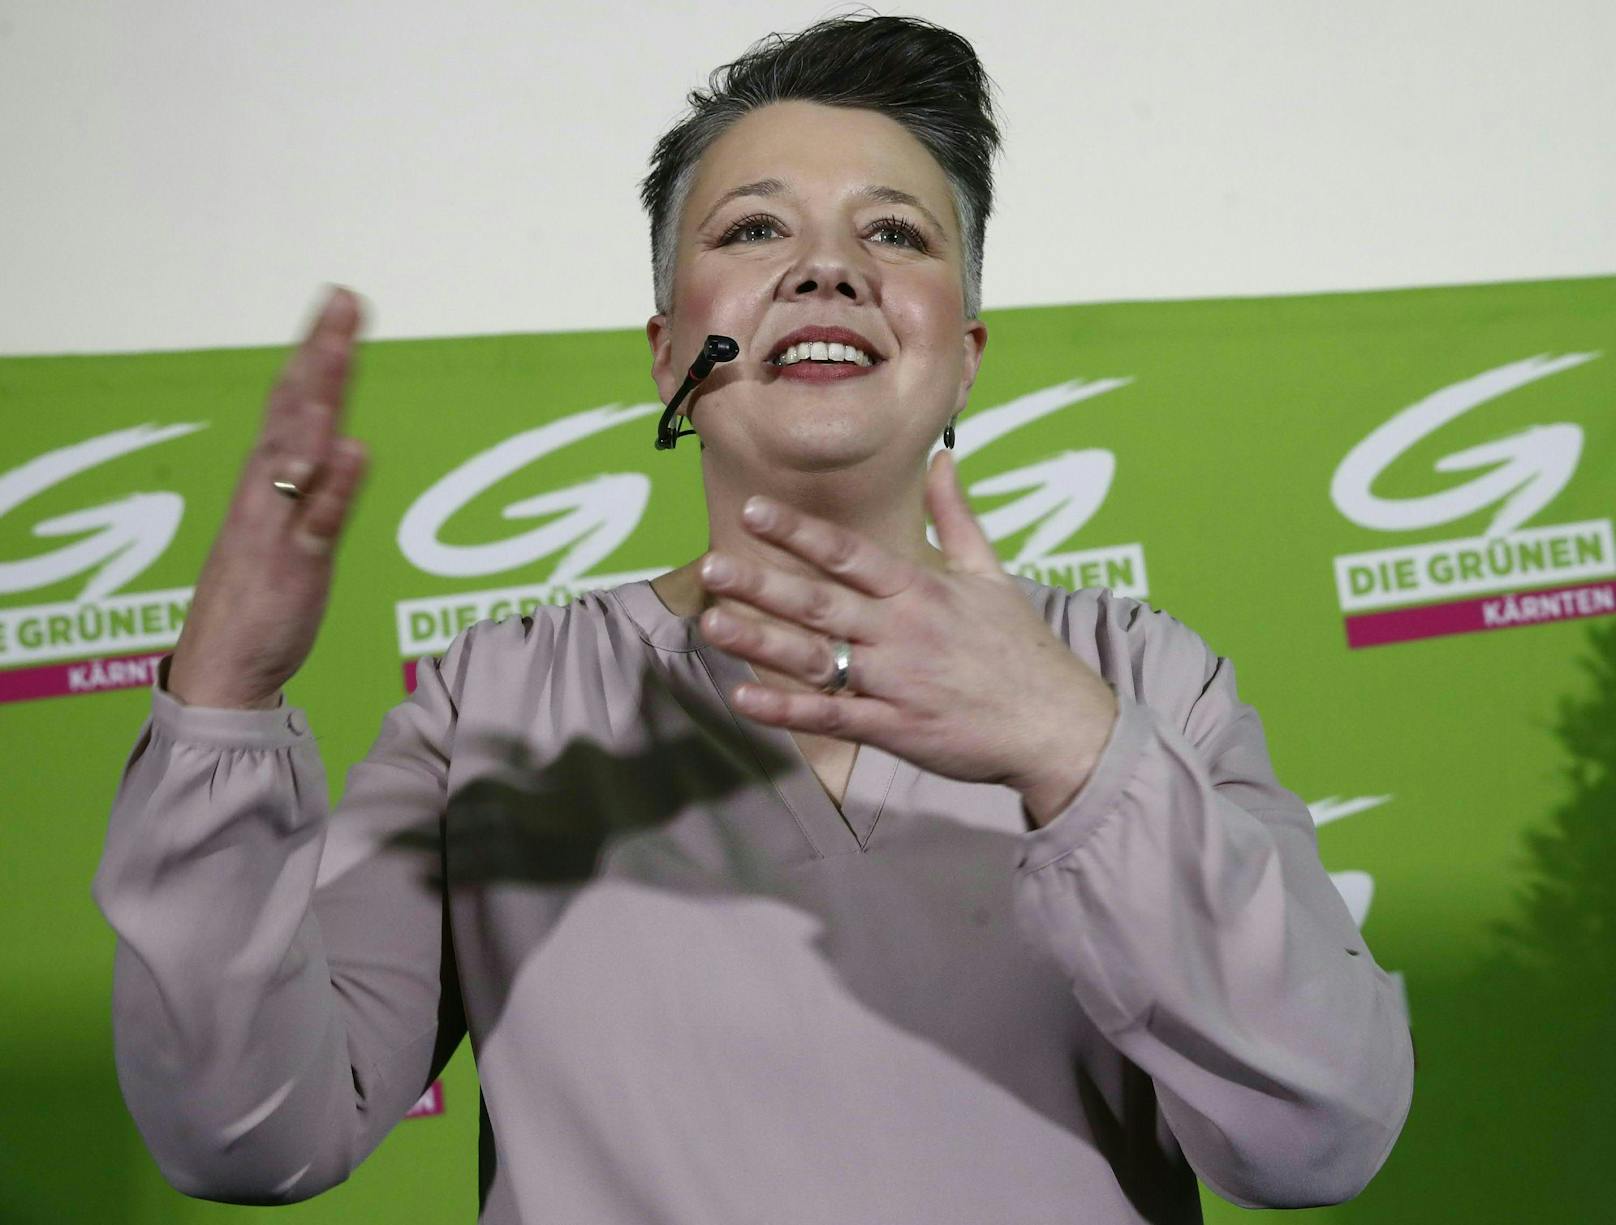 Grünen-Spitzenkandidatin Olga Voglauer